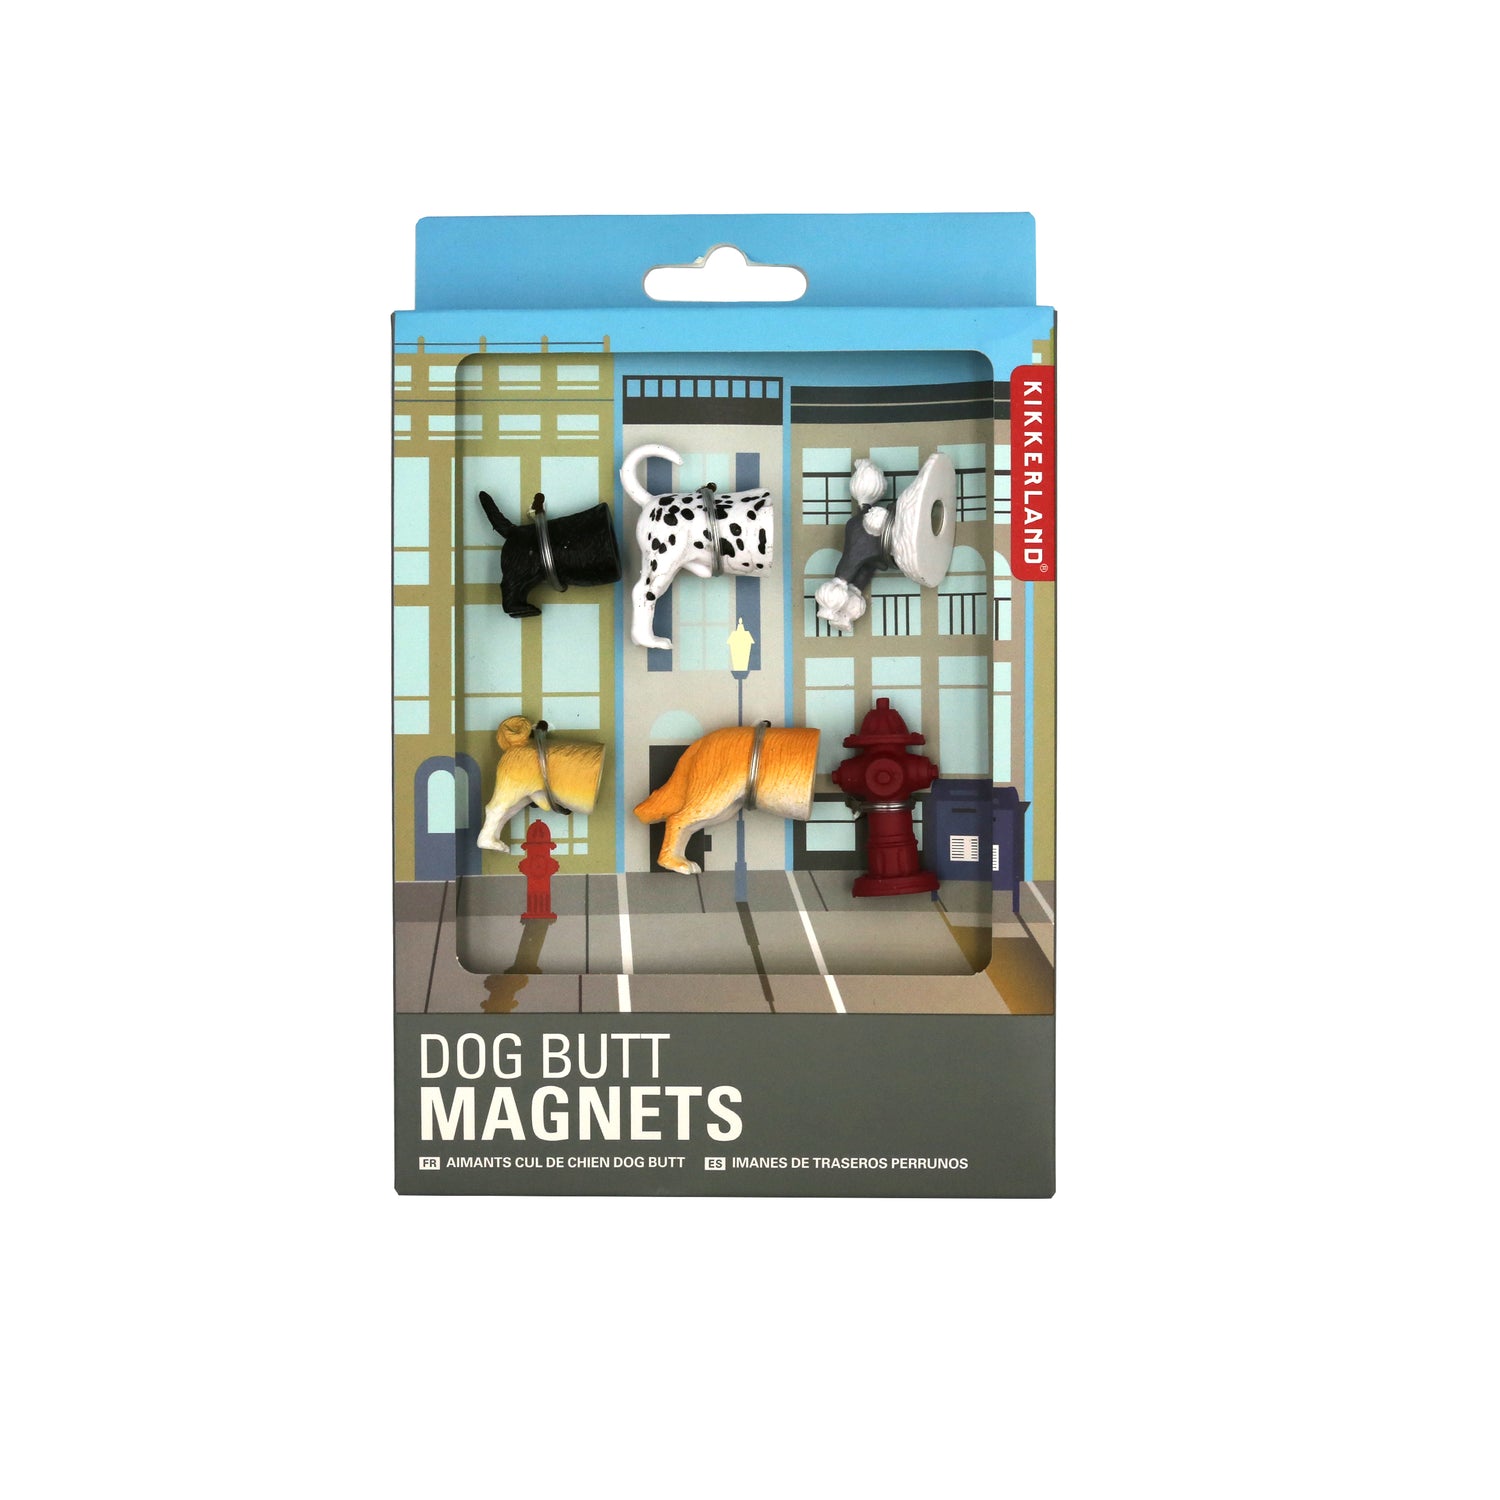 Dog Butt Magnets